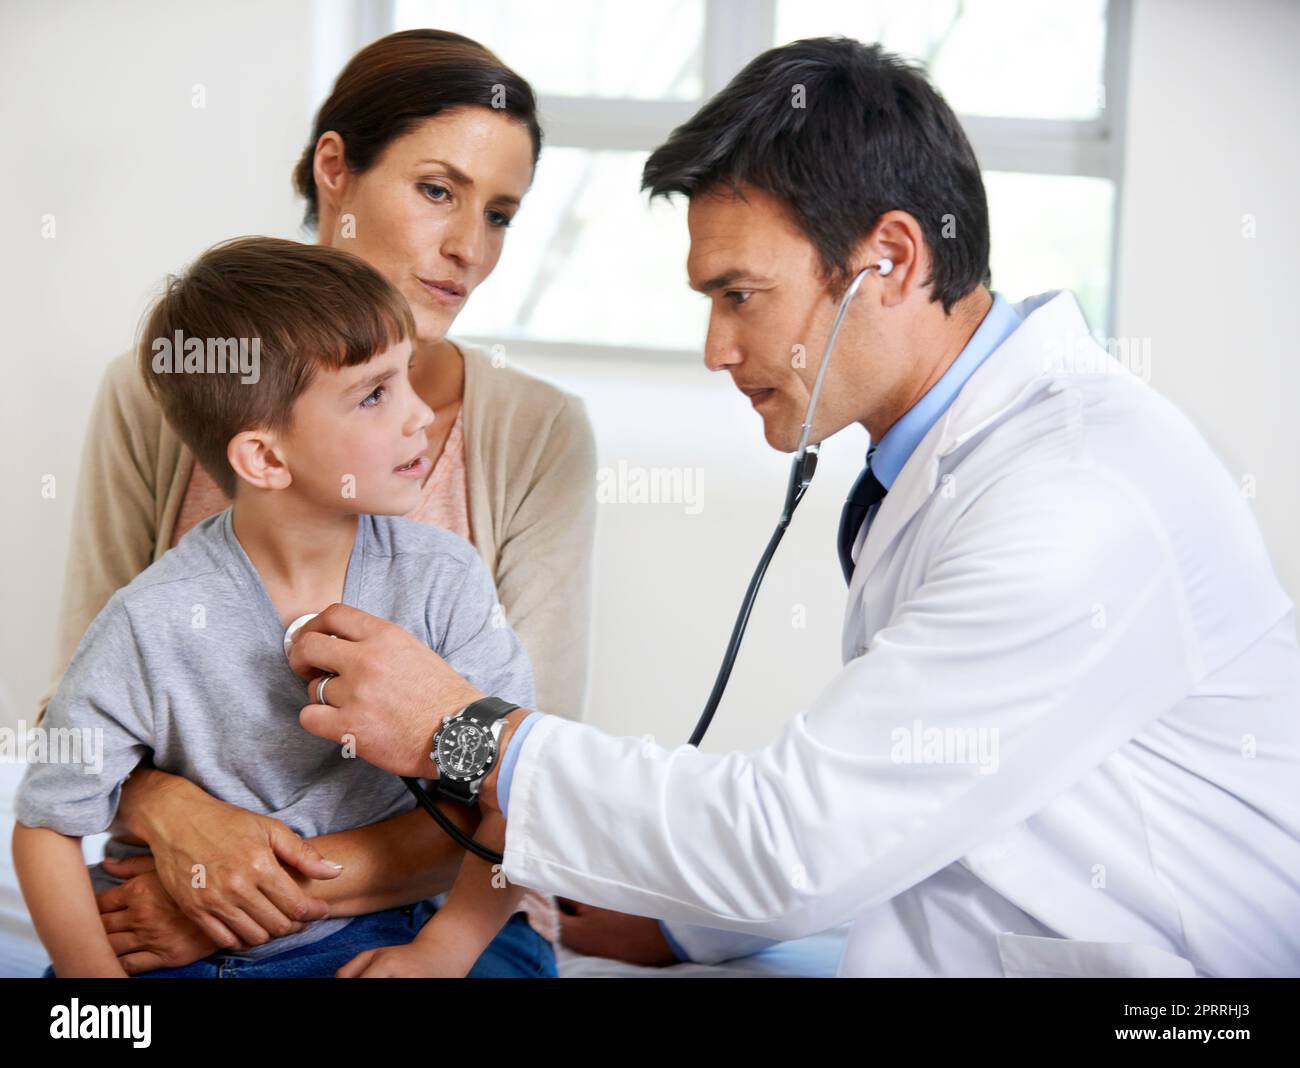 Questo ragazzino è pieno di vita, un medico interessato che esamina un giovane paziente. Foto Stock